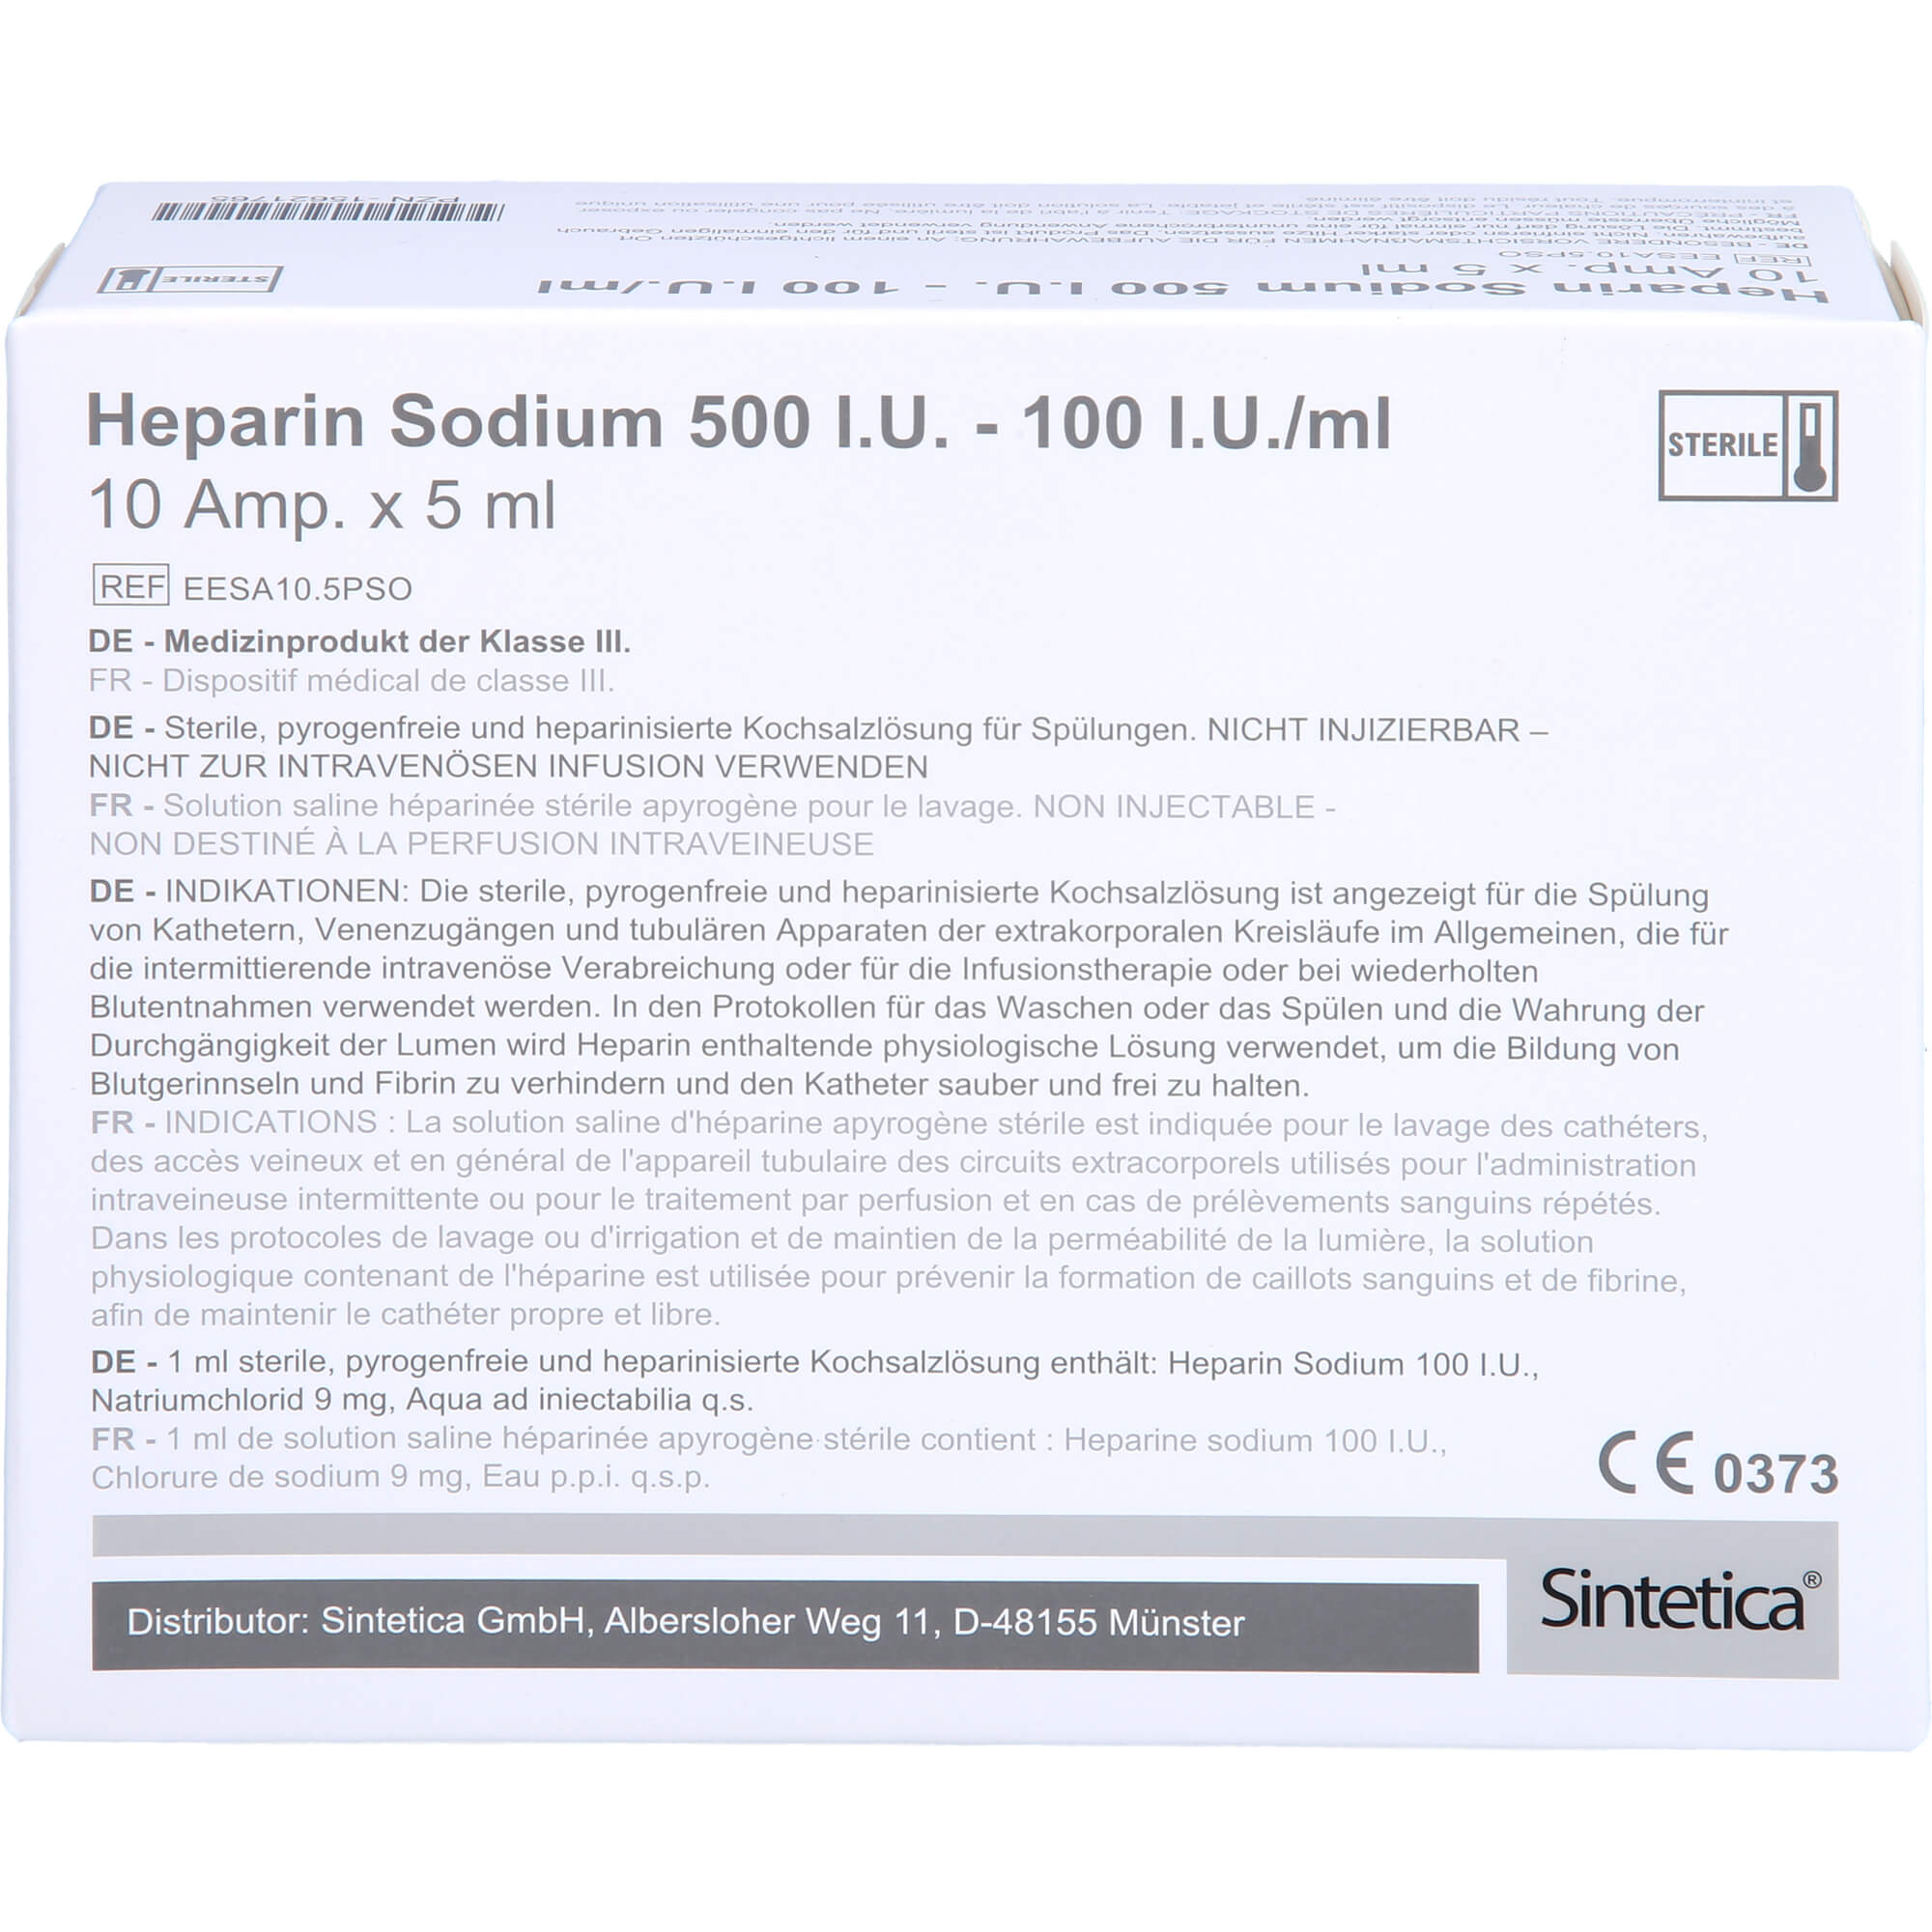 HEPARIN SODIUM 500 I.U. - 100 I.U./ml Ampullen